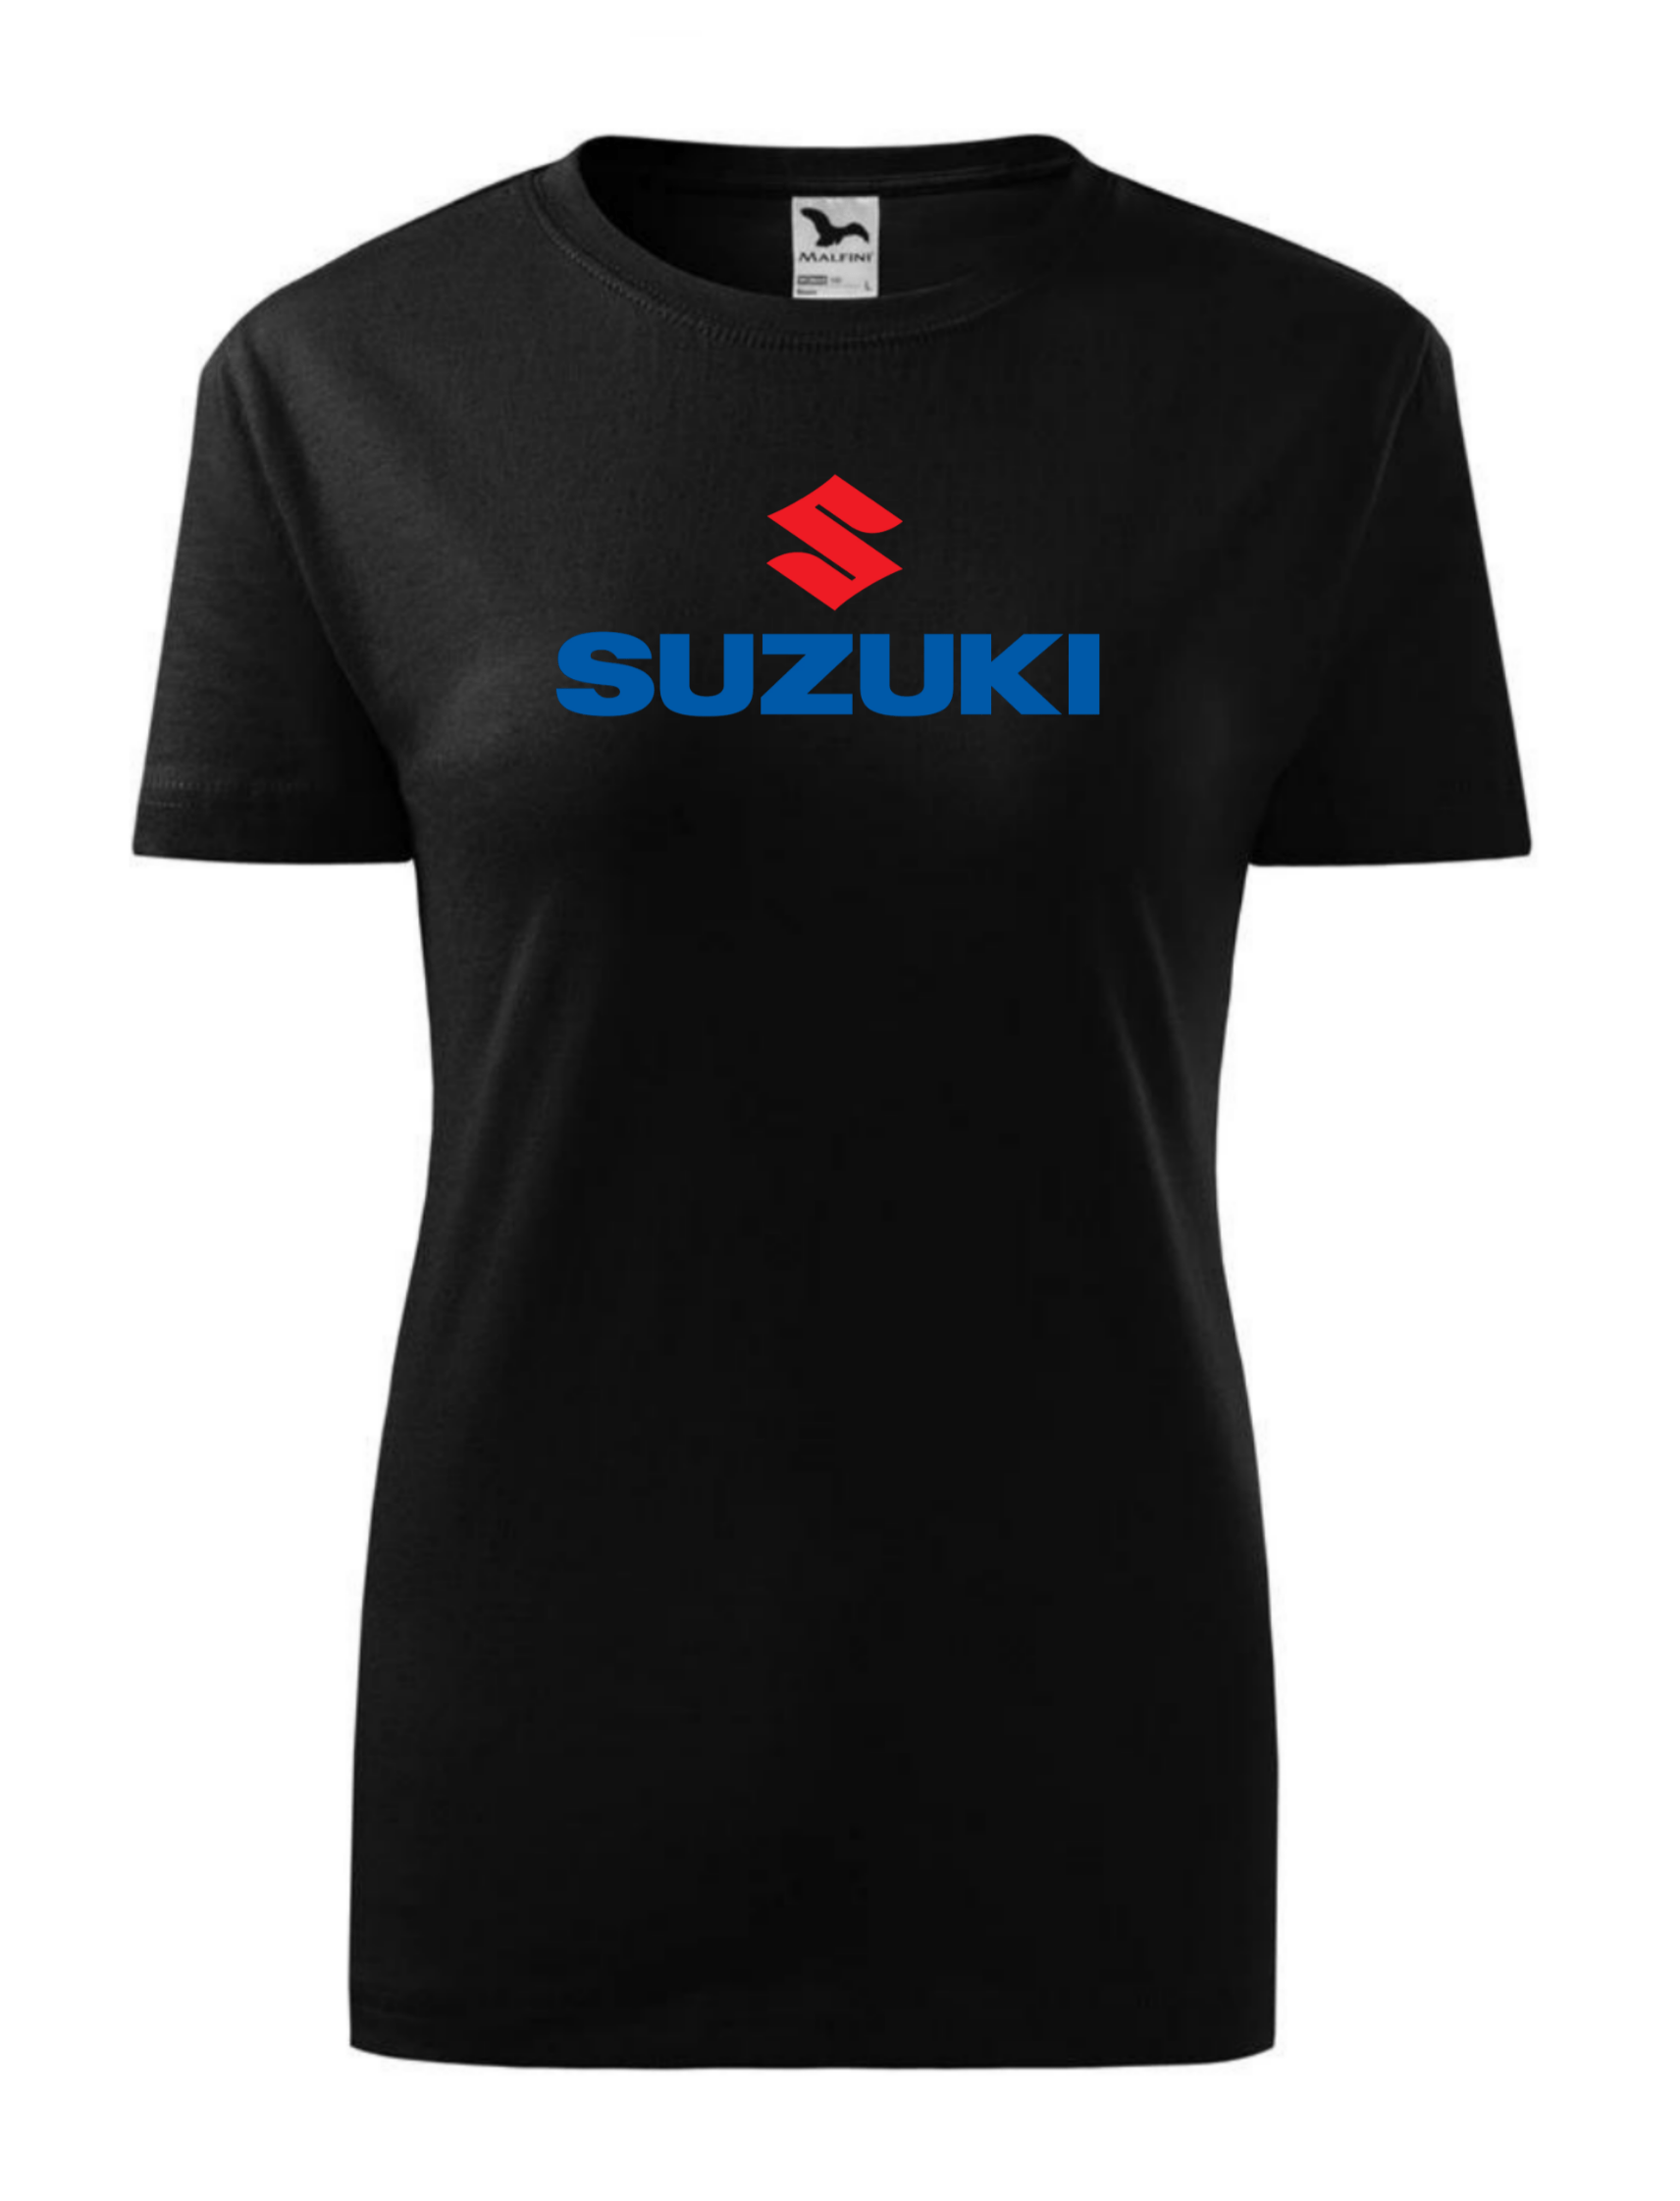 Dámské tričko s potiskem značky Suzuki 2